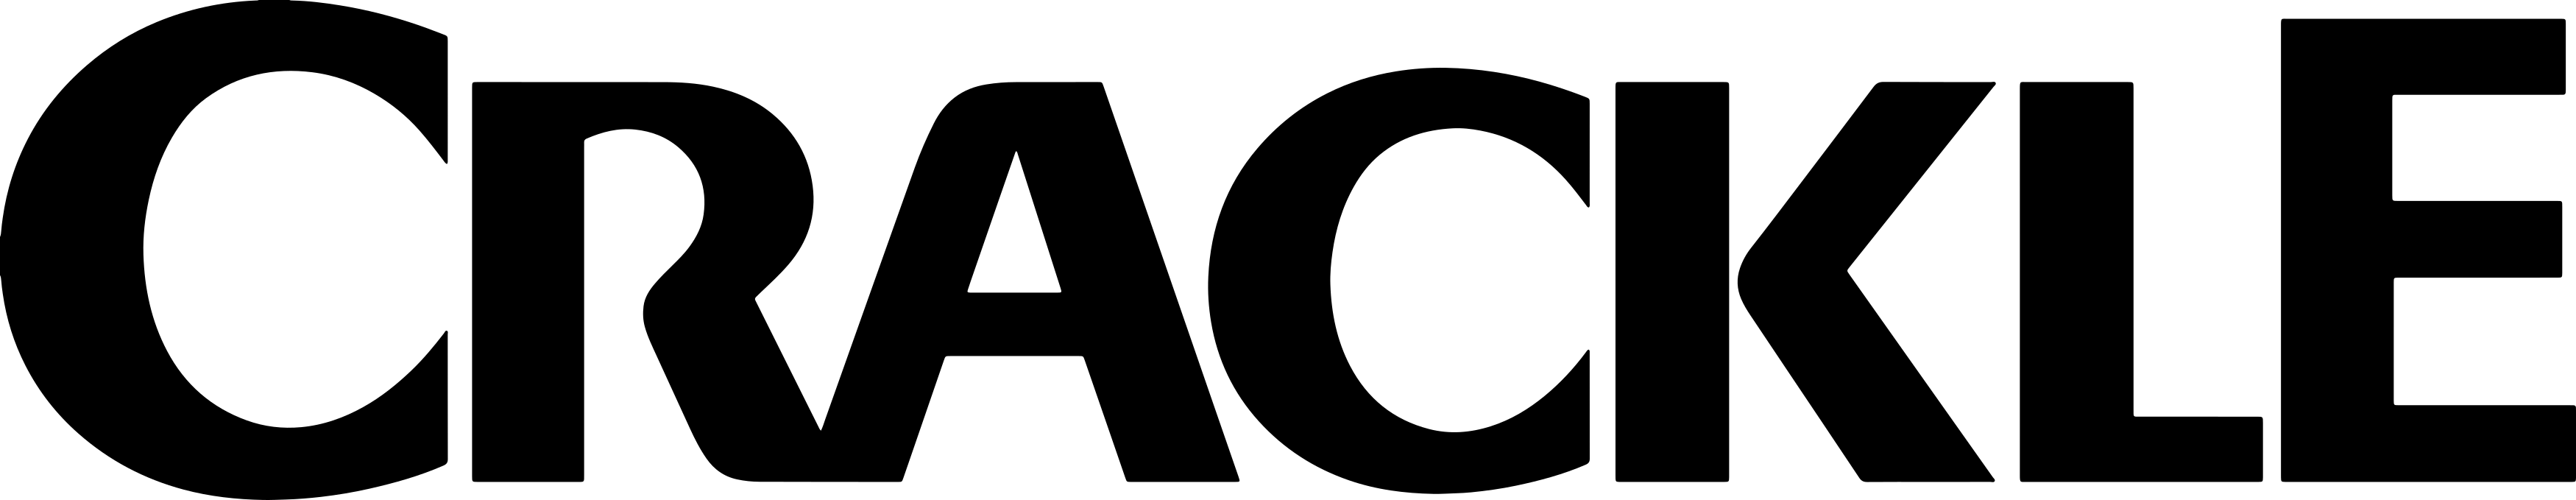 crackle logo - Crackle Logo